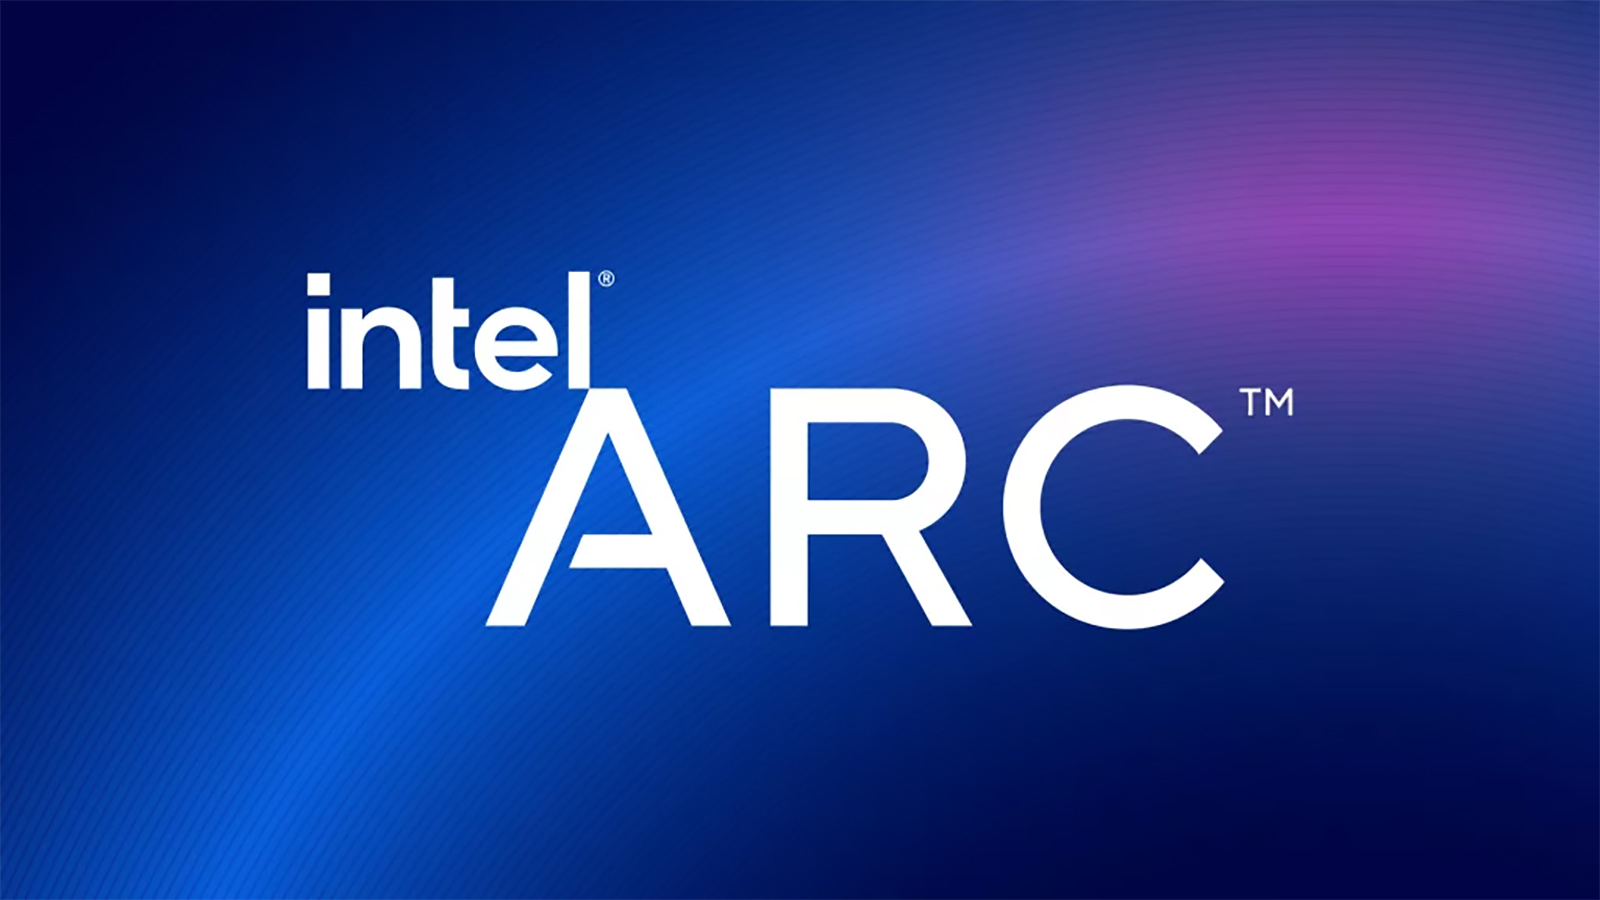 Intel pronto anunciará nuevas GPU para portátiles Line of Arc